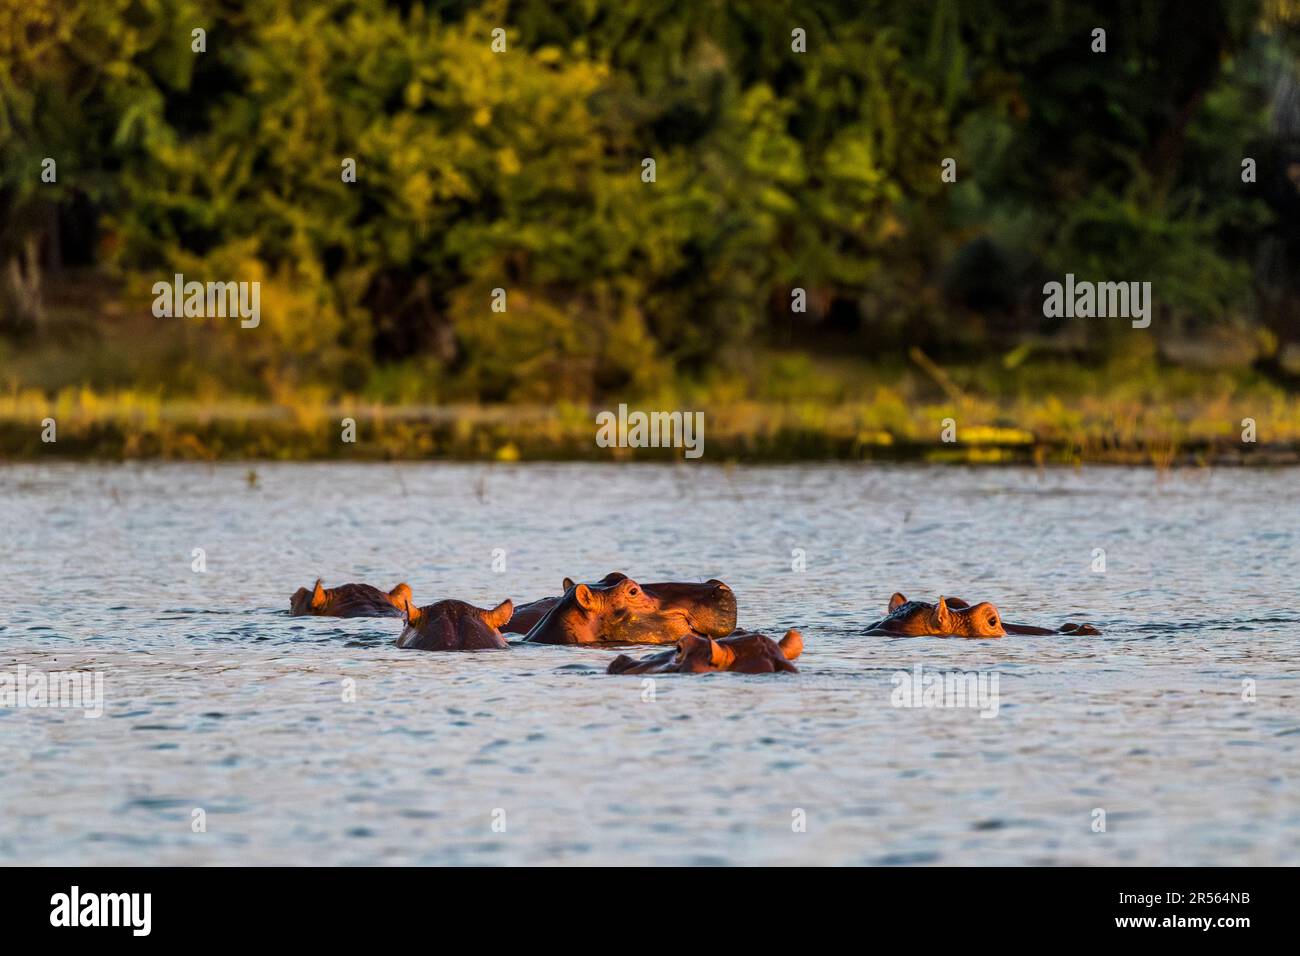 Groupe d'hippopotames dans la rivière Shire au parc national de Liwonde. Ambiance nocturne avec Hippos sur la rivière Shire. Parc national de Liwonde, Malawi. Un troupeau d'hippopotames dans le soleil du soir à la rivière Shire, parc national de Liwonde Banque D'Images